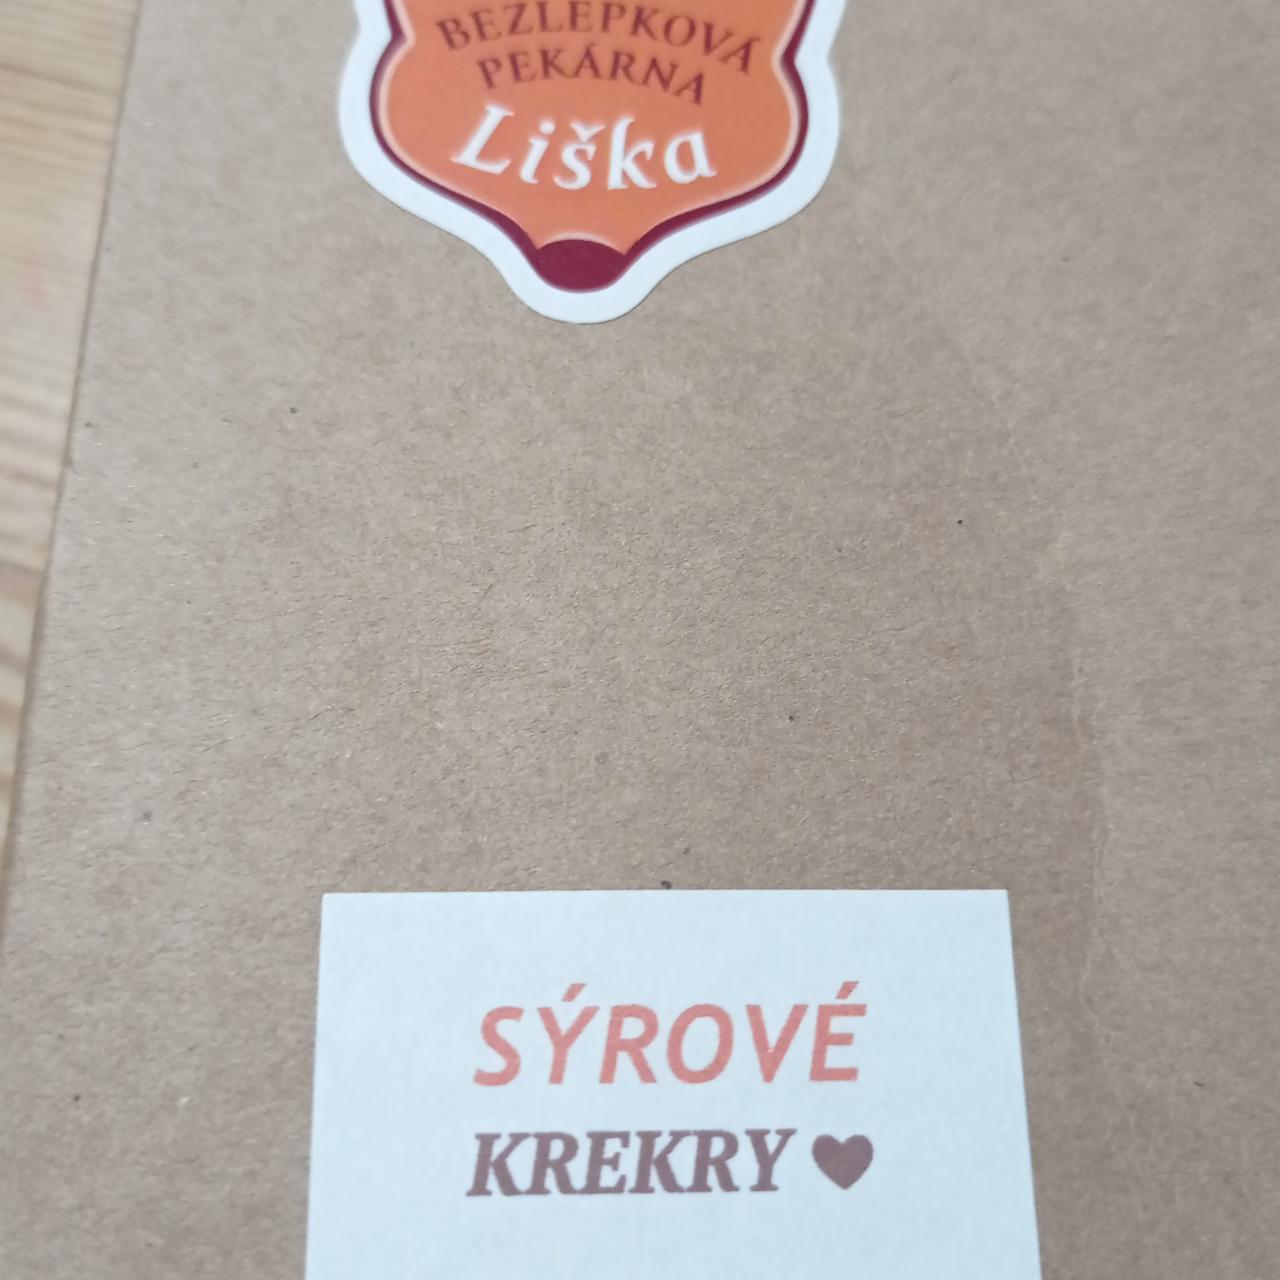 Fotografie - Sýrové krekry Bezlepková pekárna Liška